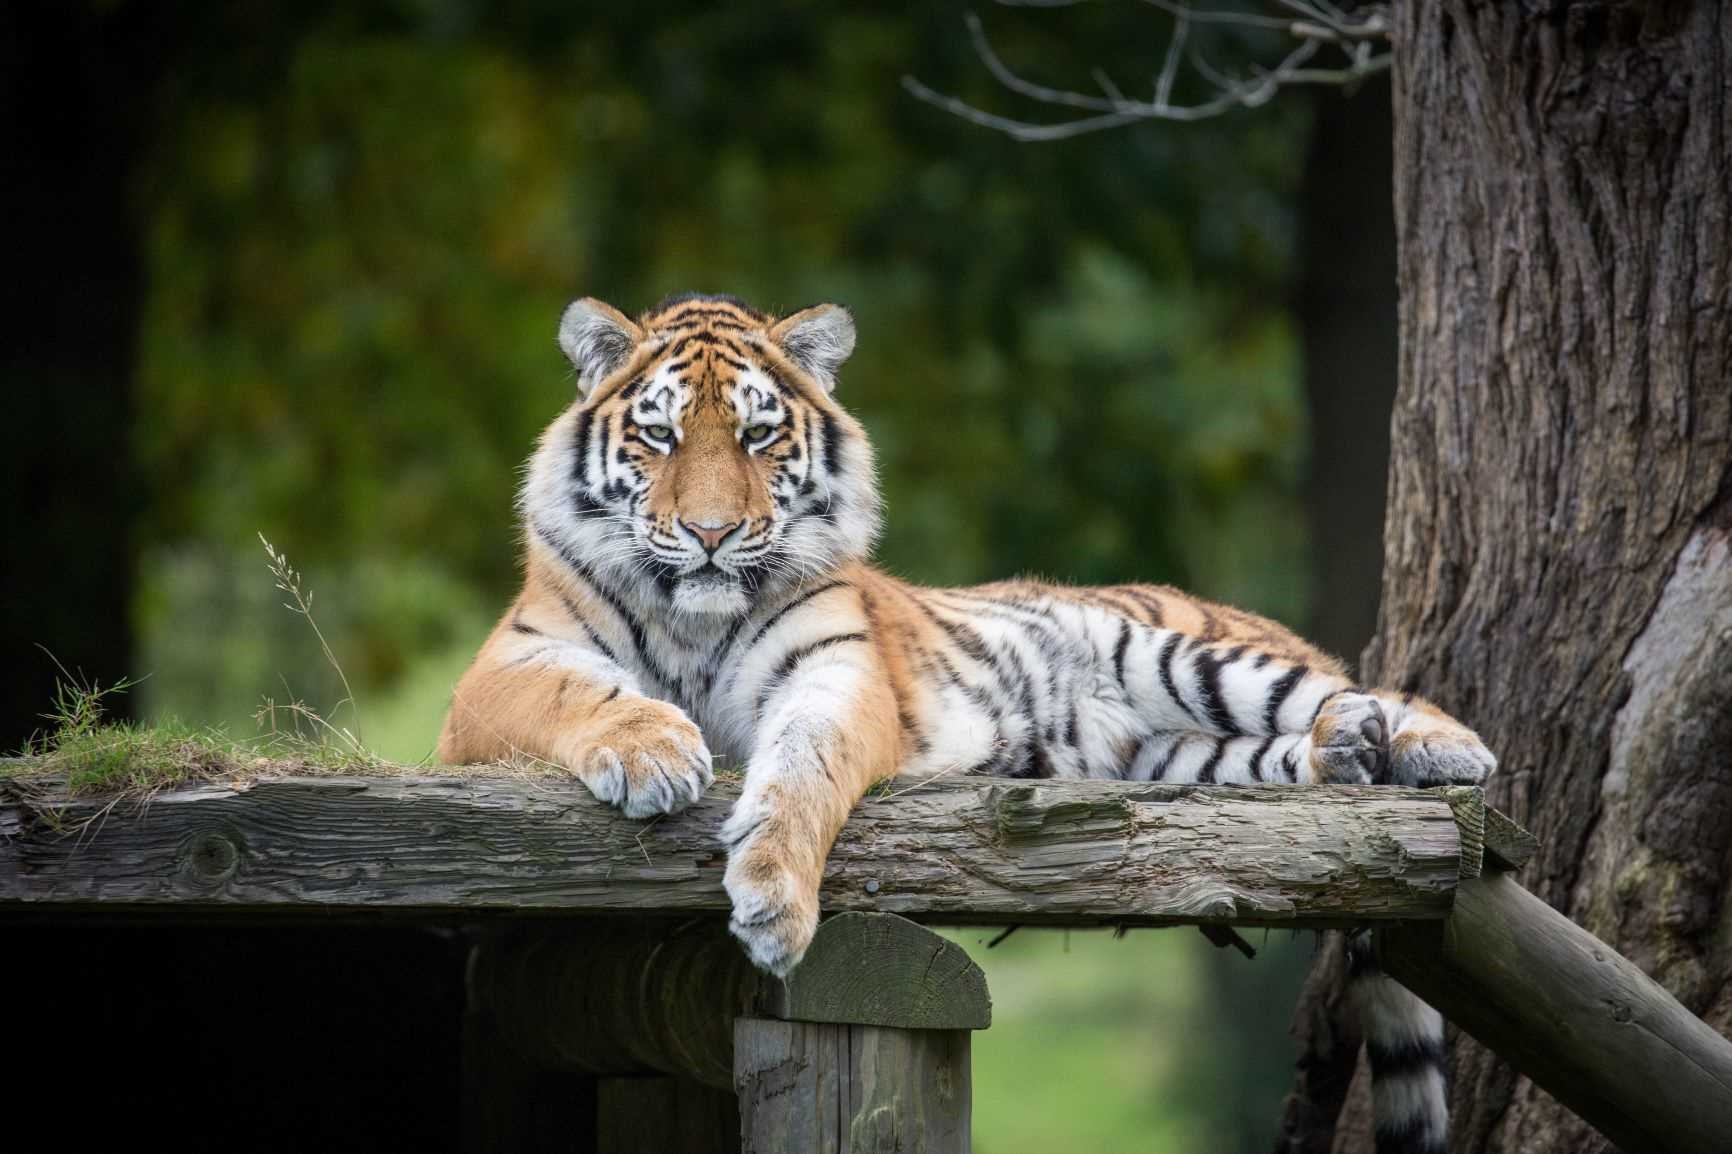 Milashki the Amur Tiger rests on wooden platform